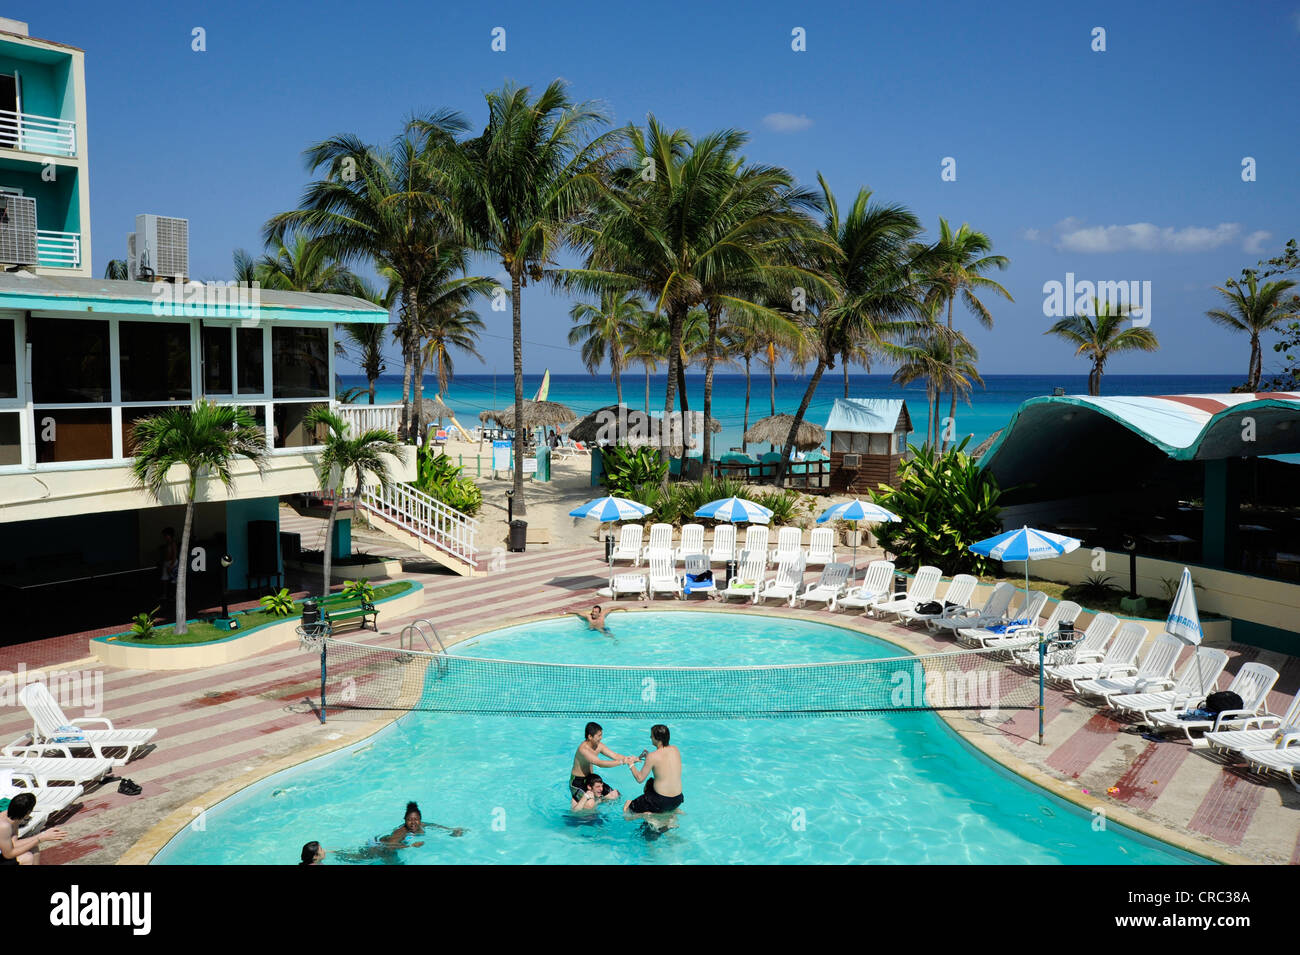 L'hôtel Atlantico, piscine et plage avec palmiers, Santa Maria del Mar, Playas del Este, La Havane, La Havane, Cuba Banque D'Images